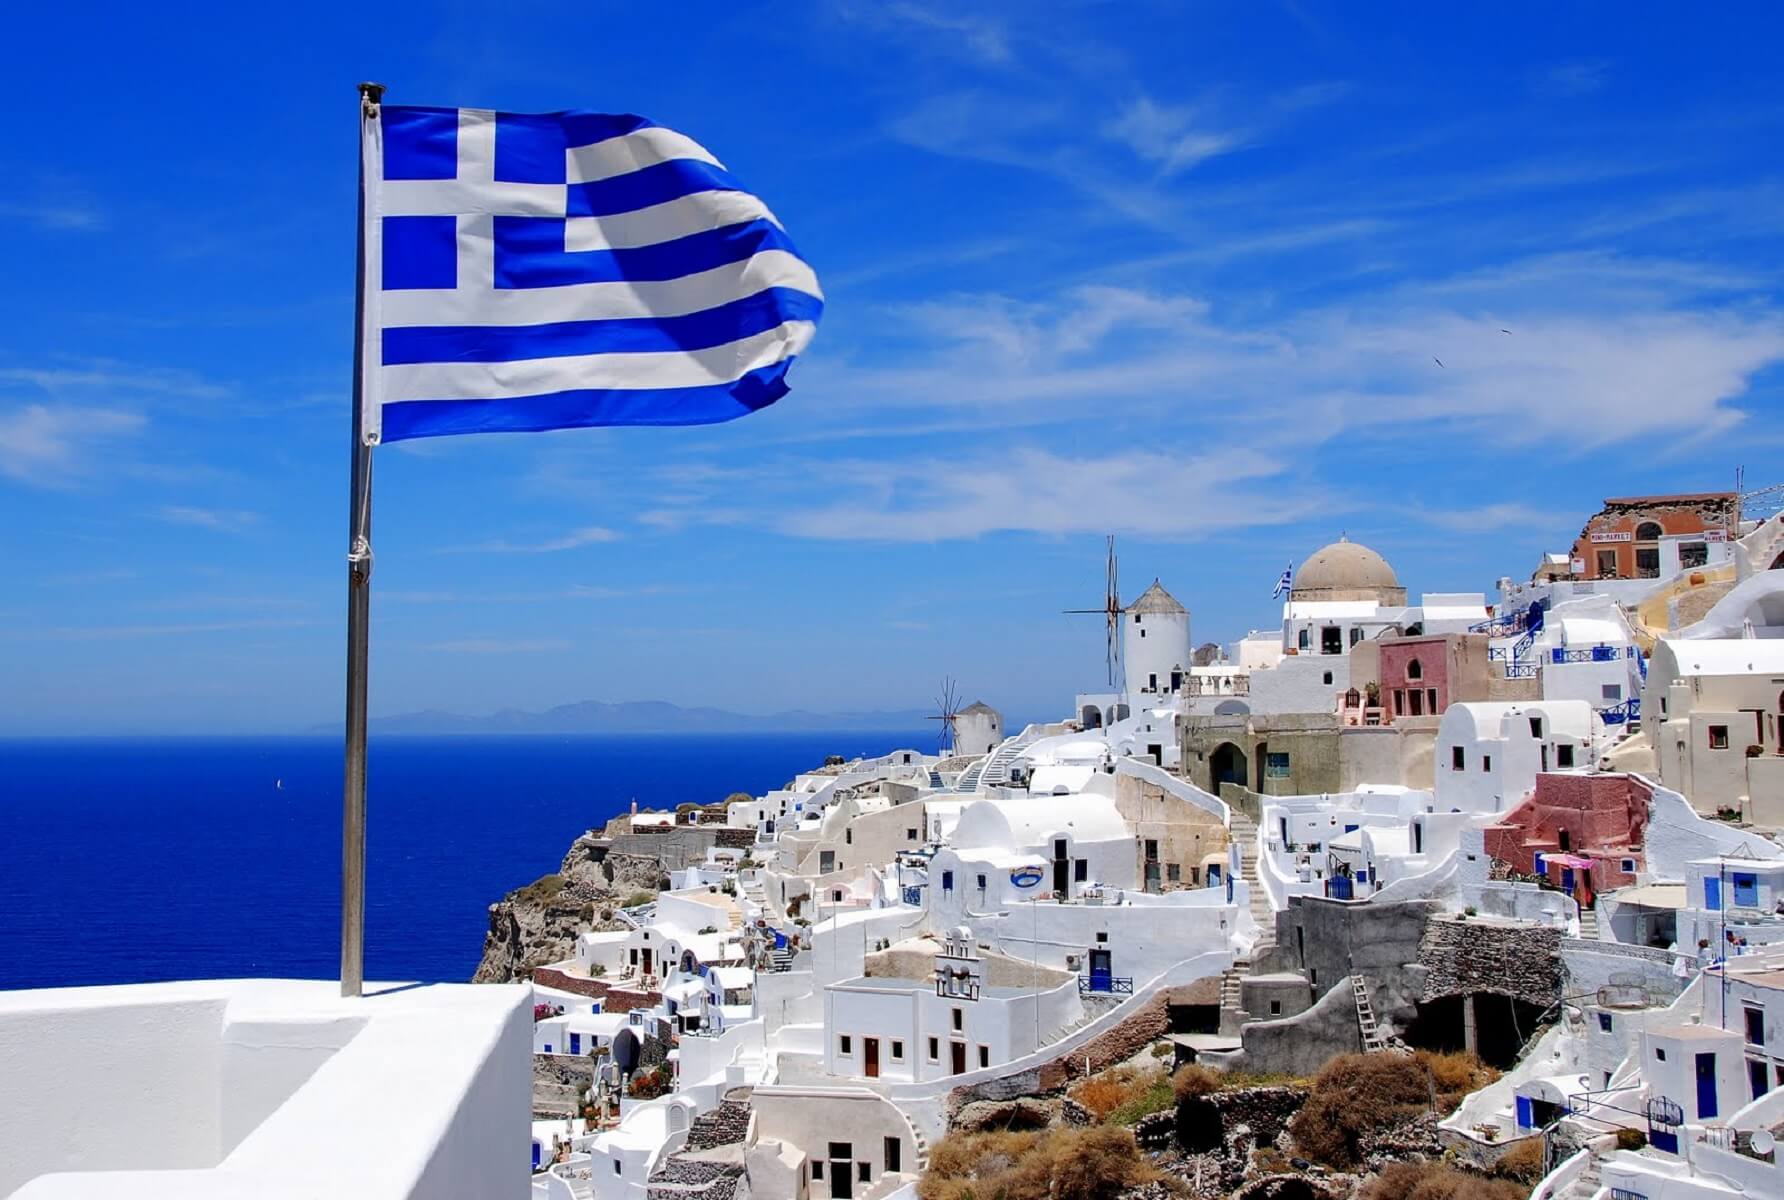 Ταξιδιωτικά γραφεία καλούν τη Βρετανία να συμπεριλάβει την Ελλάδα στην «πράσινη λίστα» για ασφαλή τουρισμό